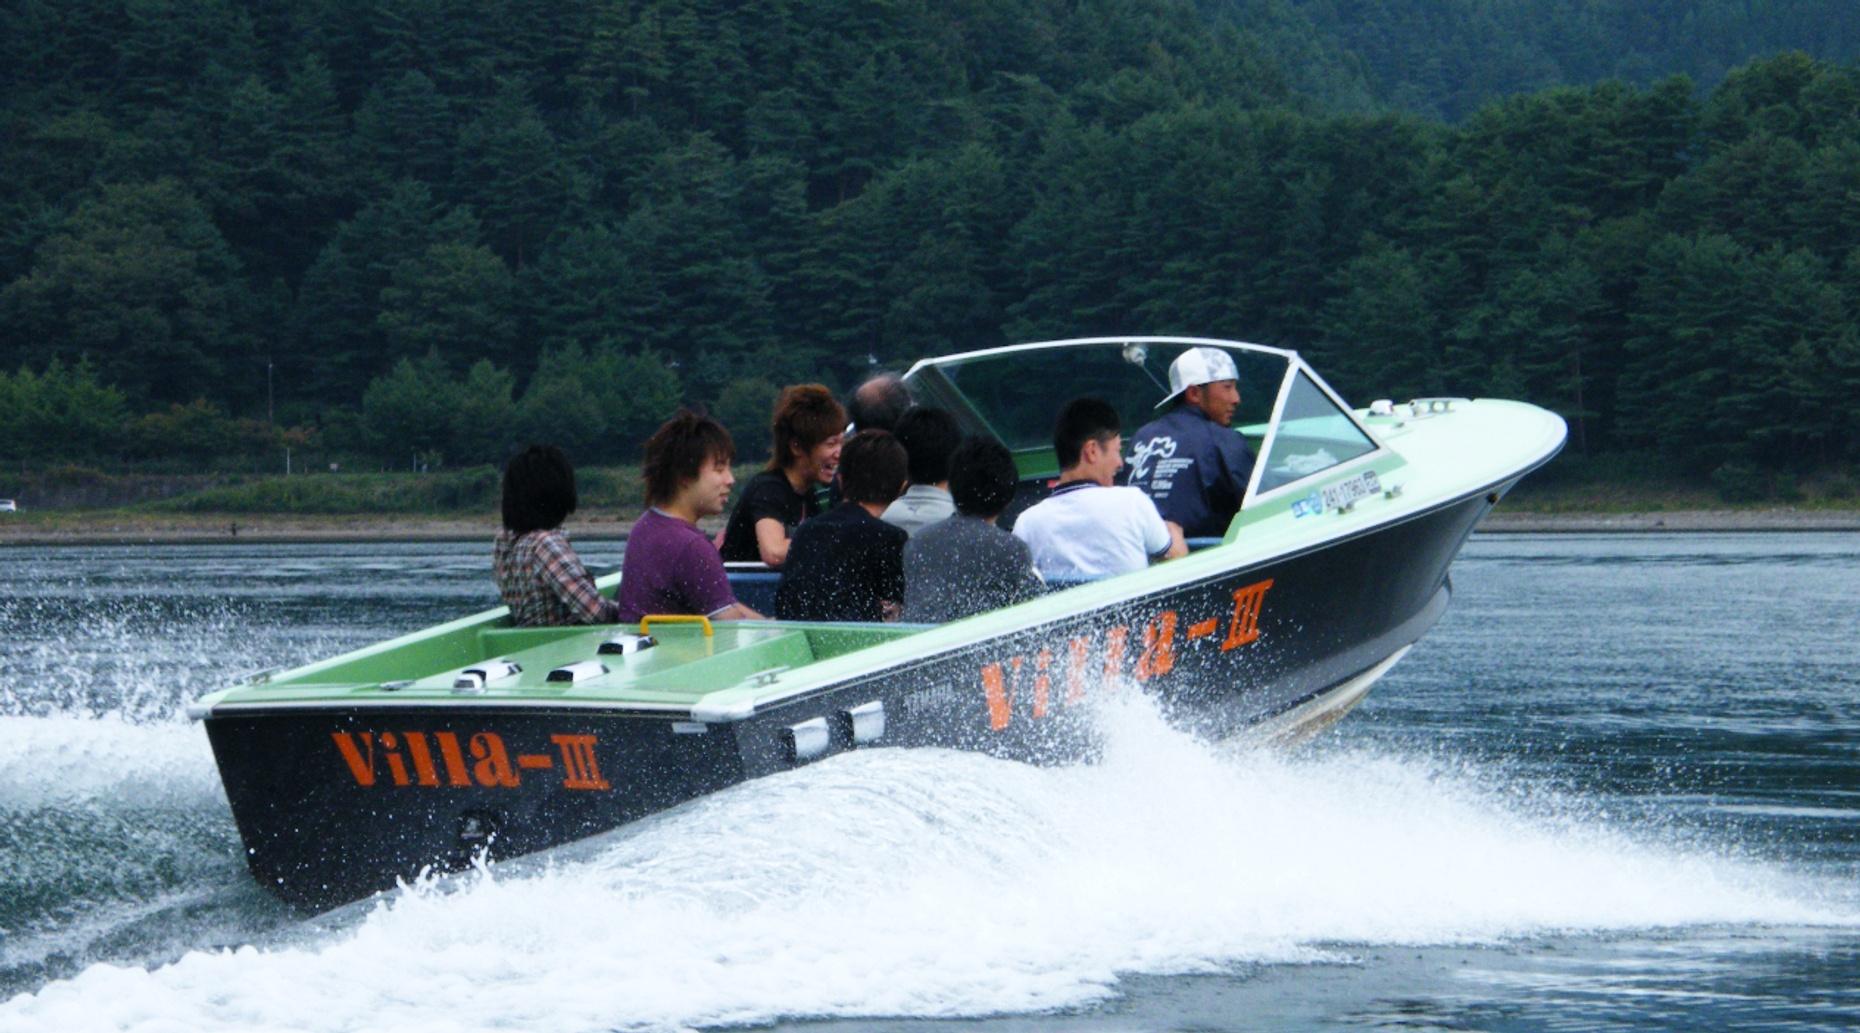 Nichupteé Lagoon Speedboat Tour